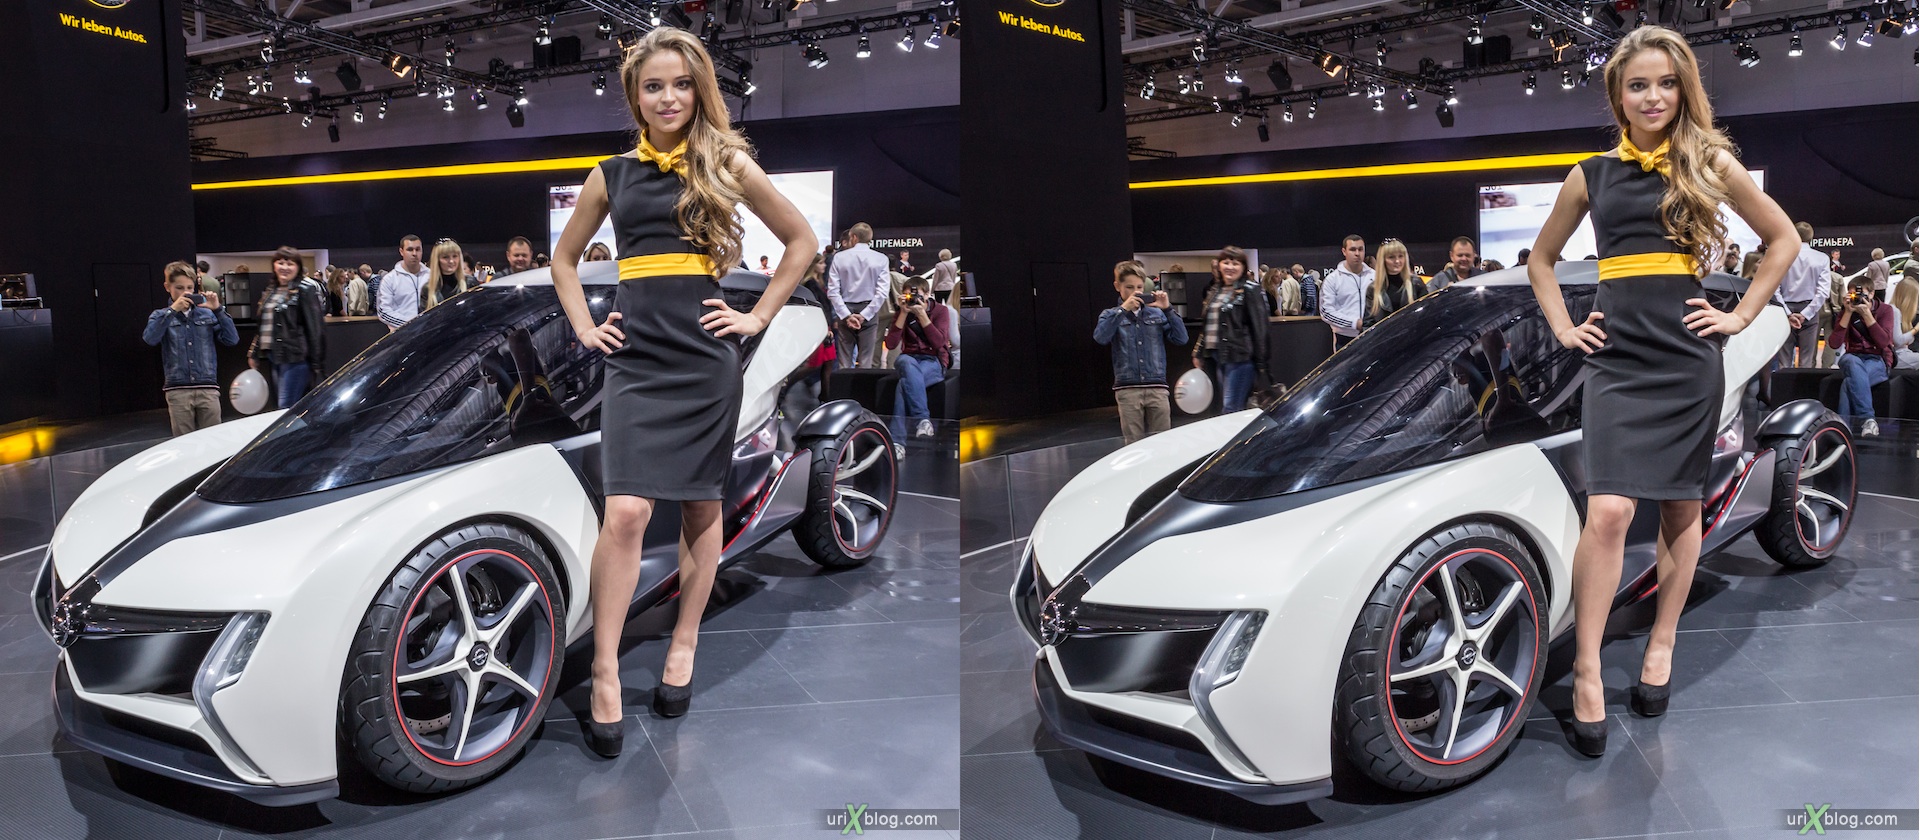 2012, Opel, Wir Leben Autos, девушка, модель, Московский международный автомобильный салон, ММАС, Крокус Экспо, 3D, стерео, стереопара